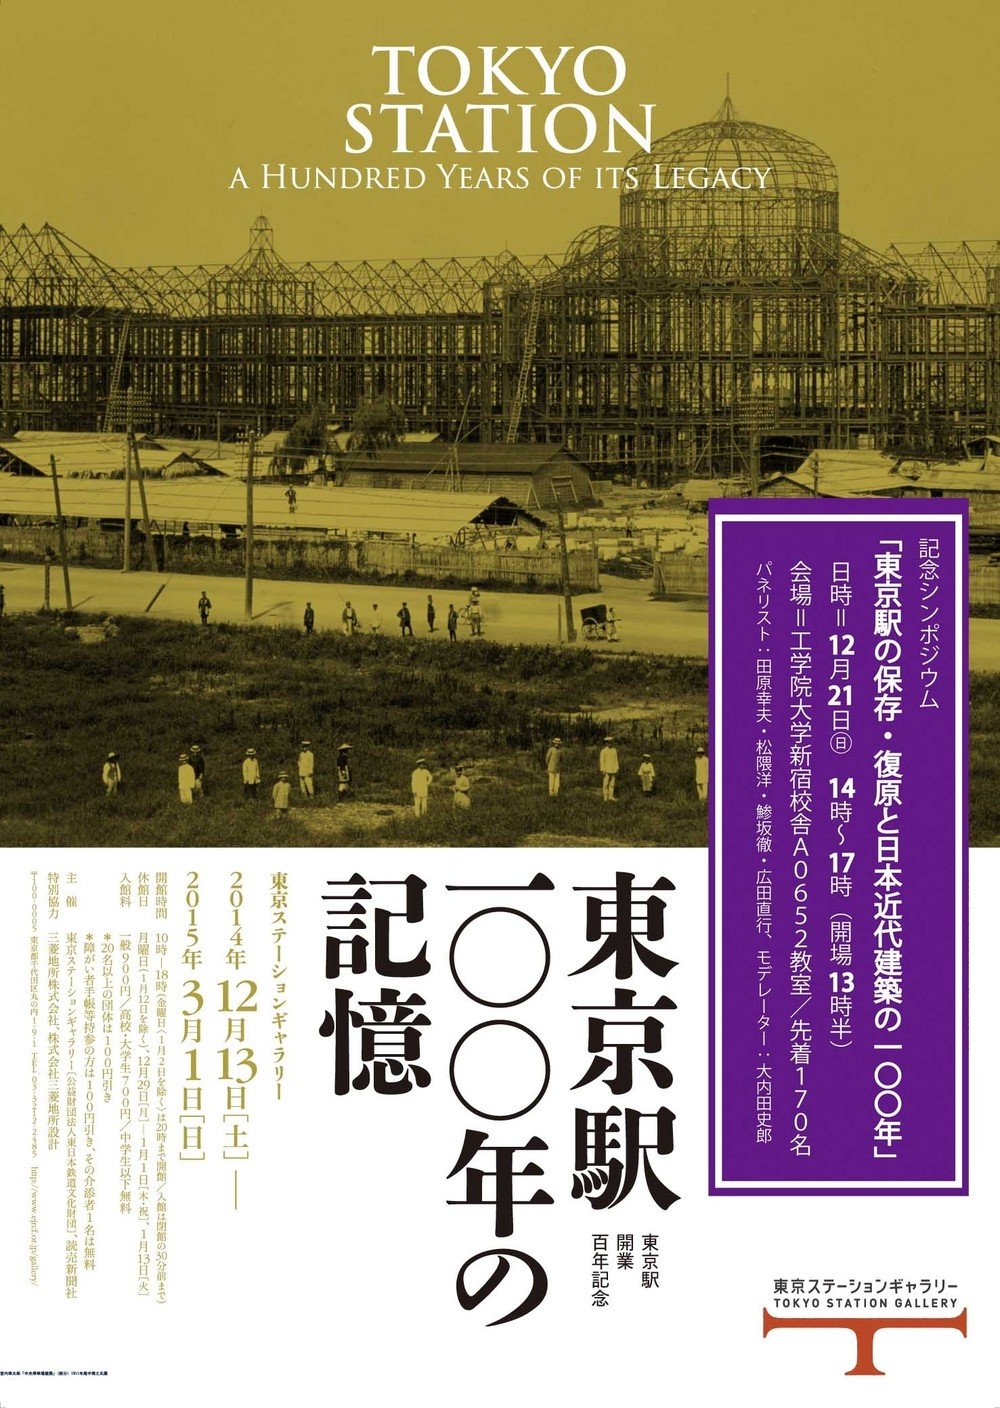 「東京駅100年の記憶」展は東京駅ステーションギャラリーで開催中